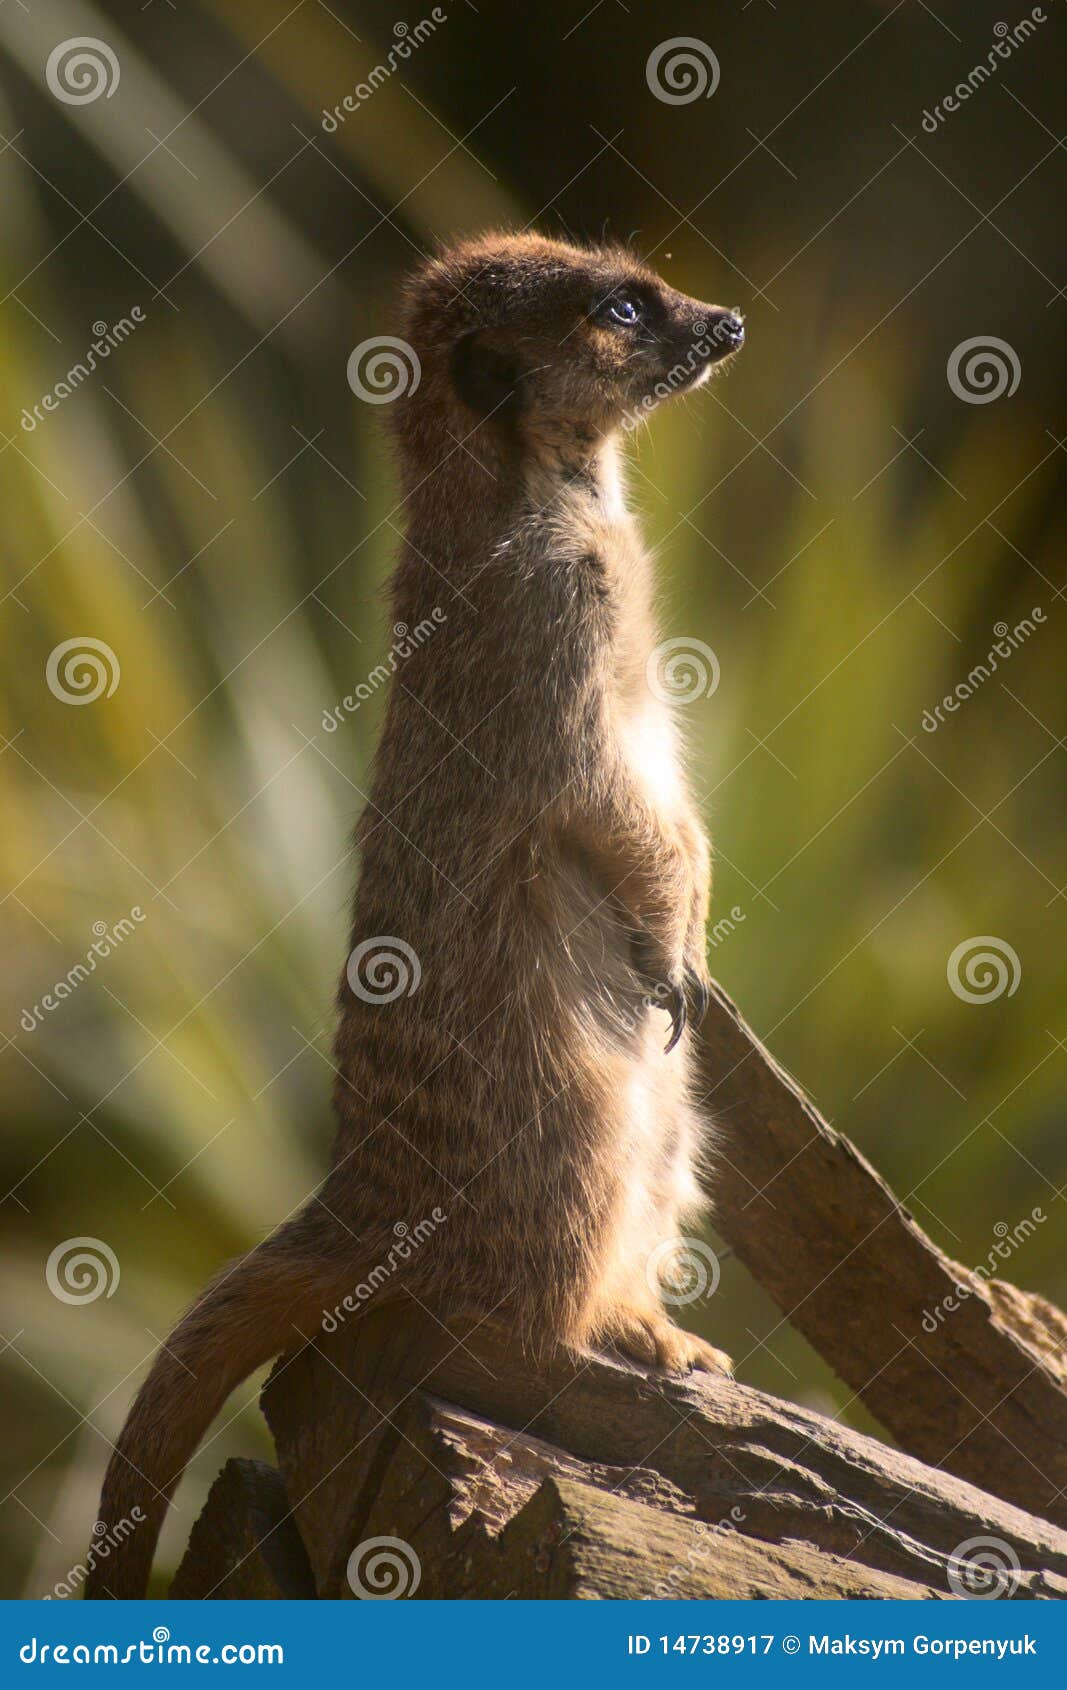 suricata on a tree trunk